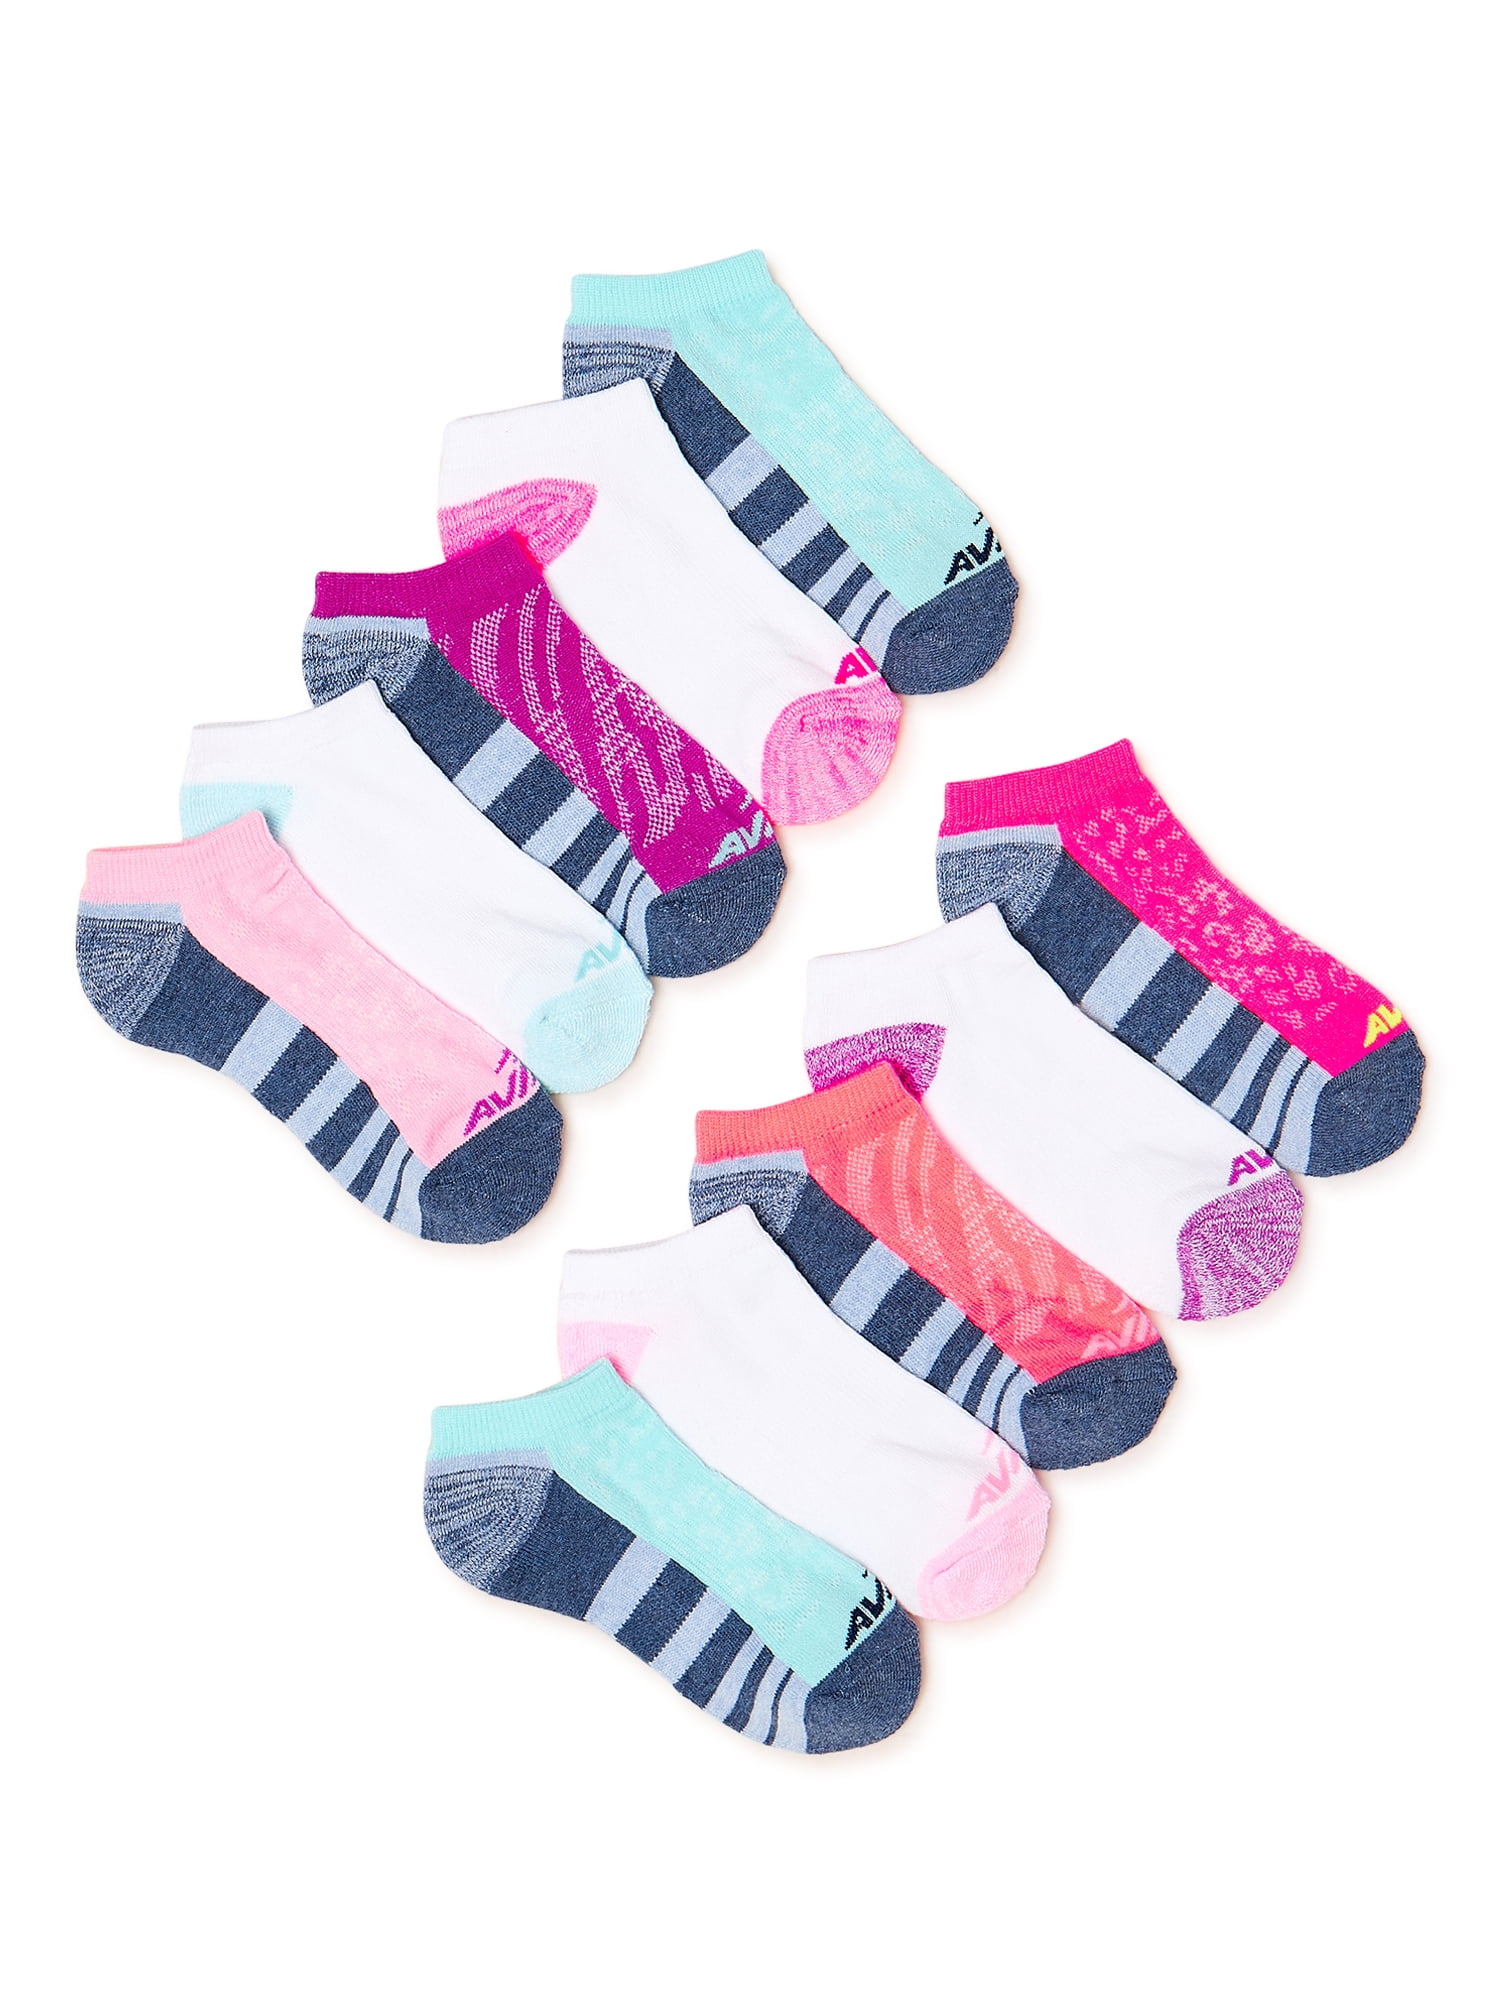 Avia Girls' No-Show Socks, 10 Pack - Walmart.com